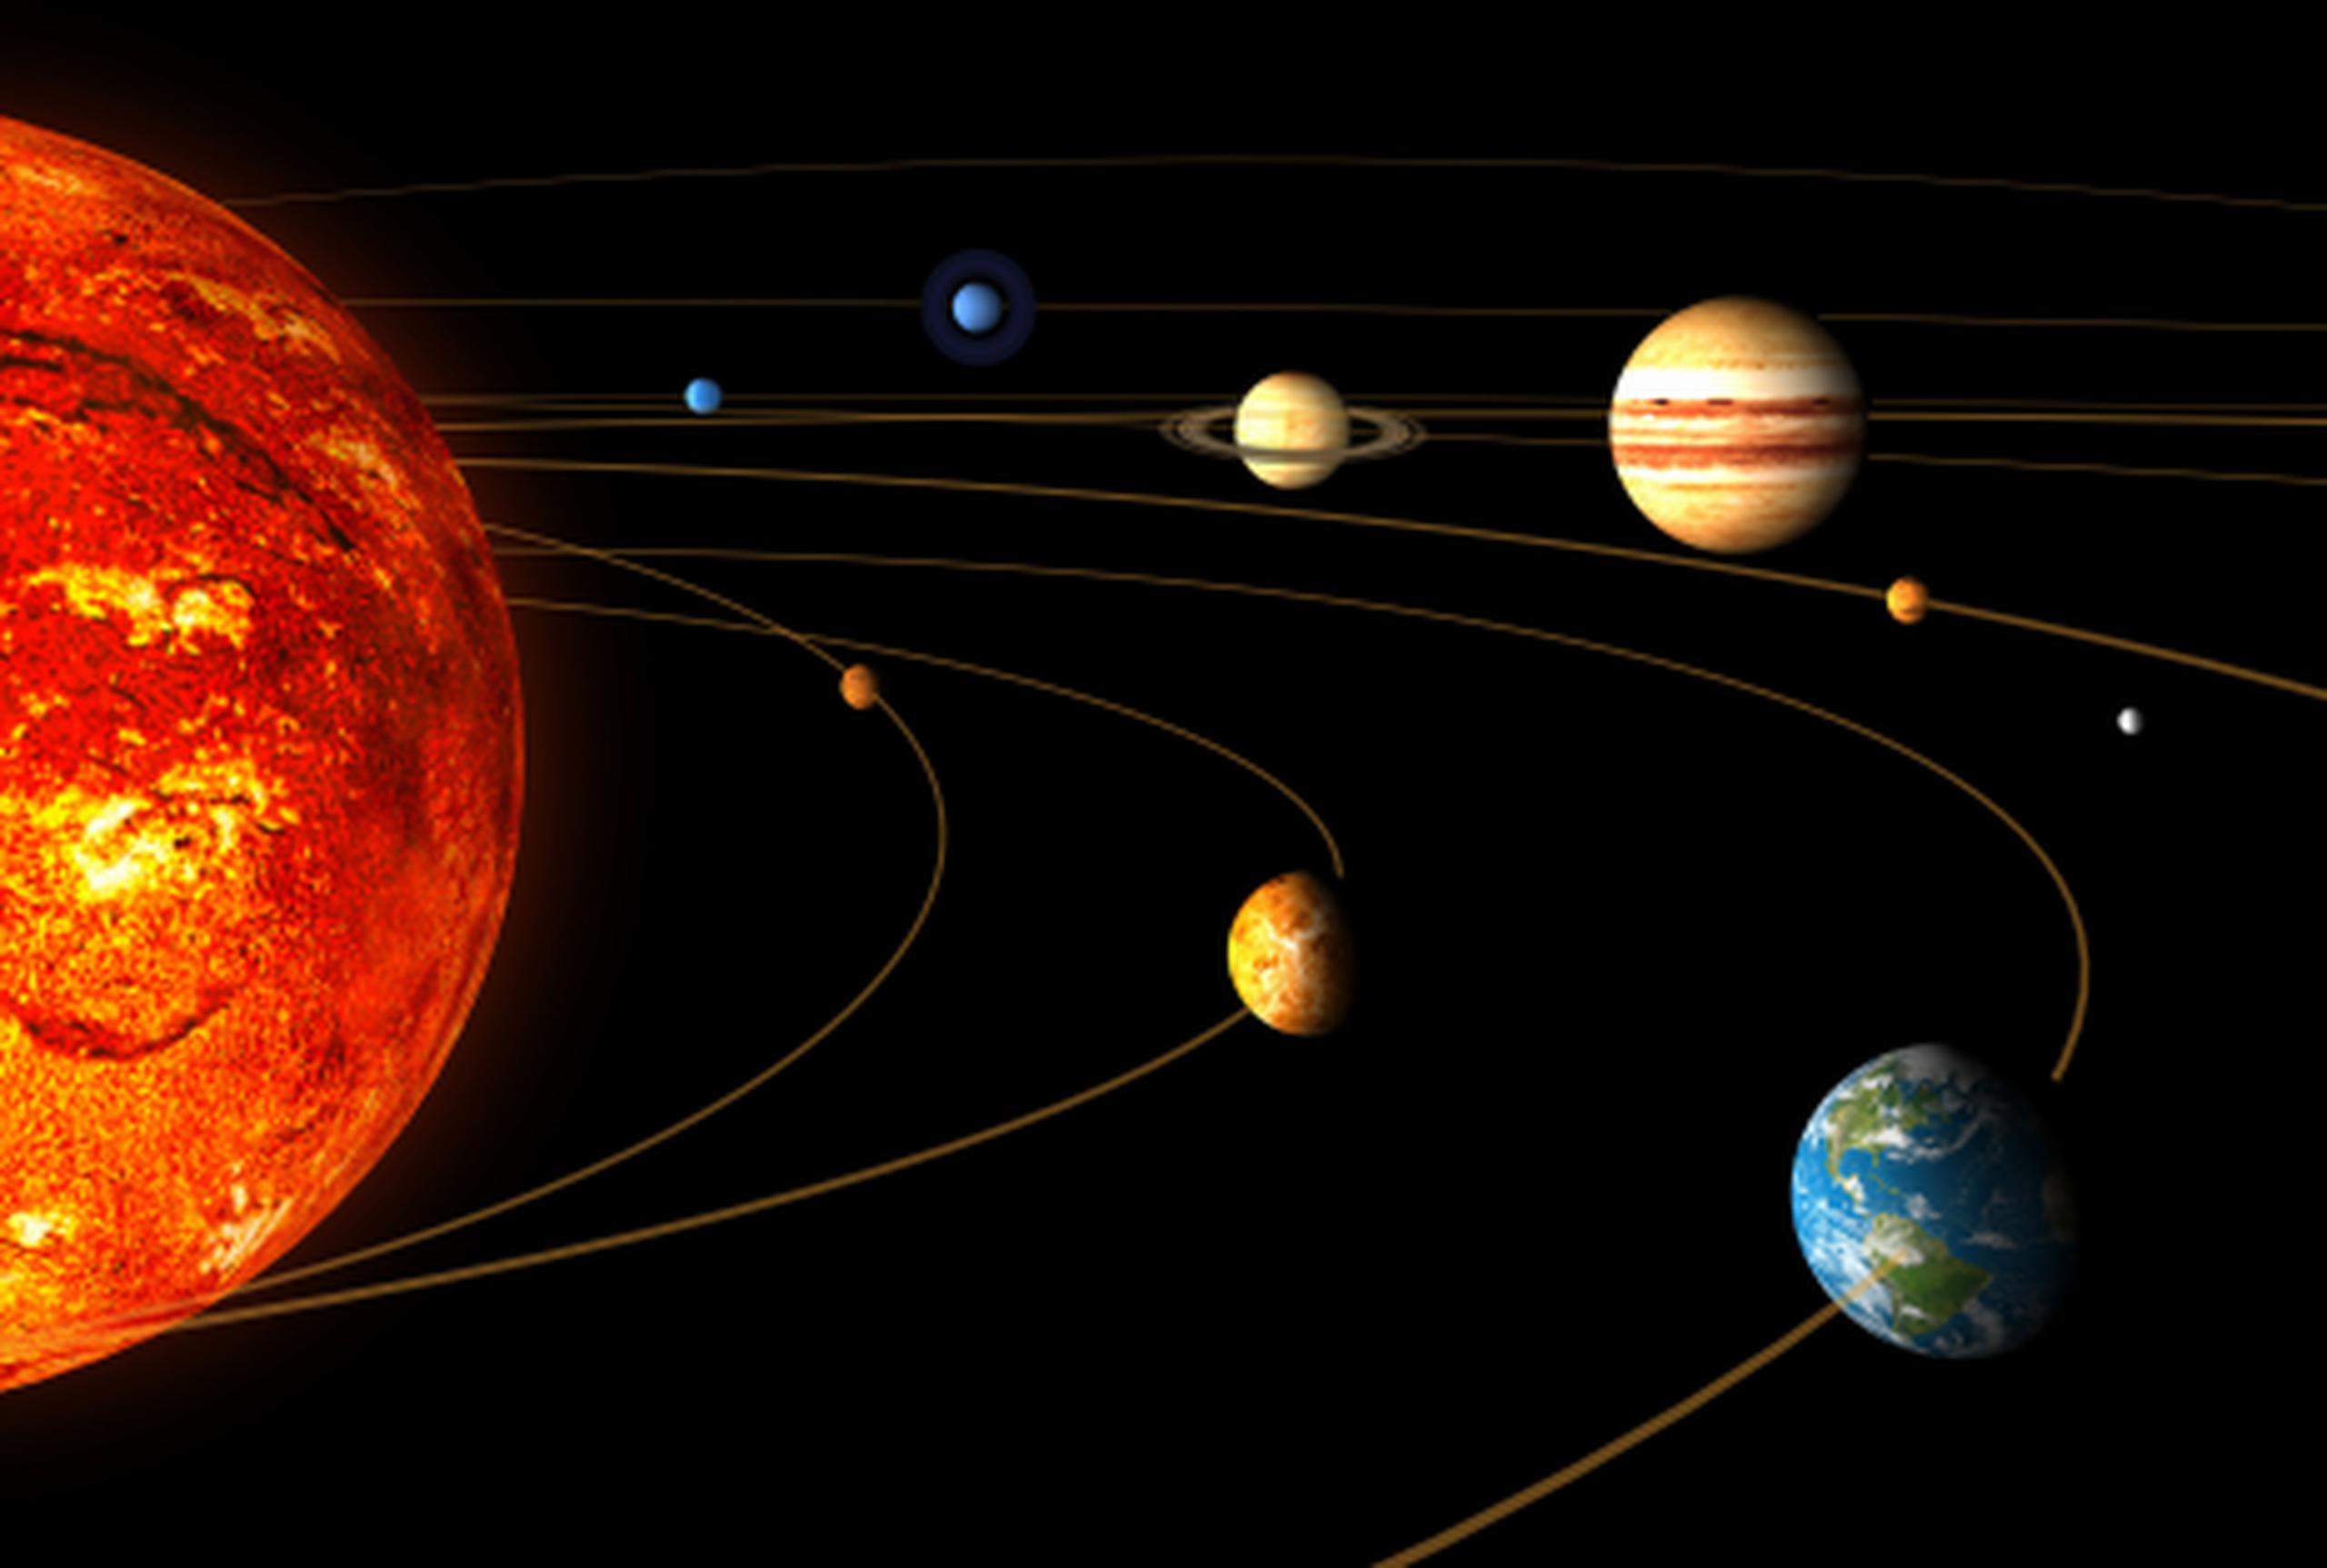 Mercurio, Venus, la Tierra y posiblemente Marte podrían acabar siendo engullidos durante la expansión del Sol. (Archivo)